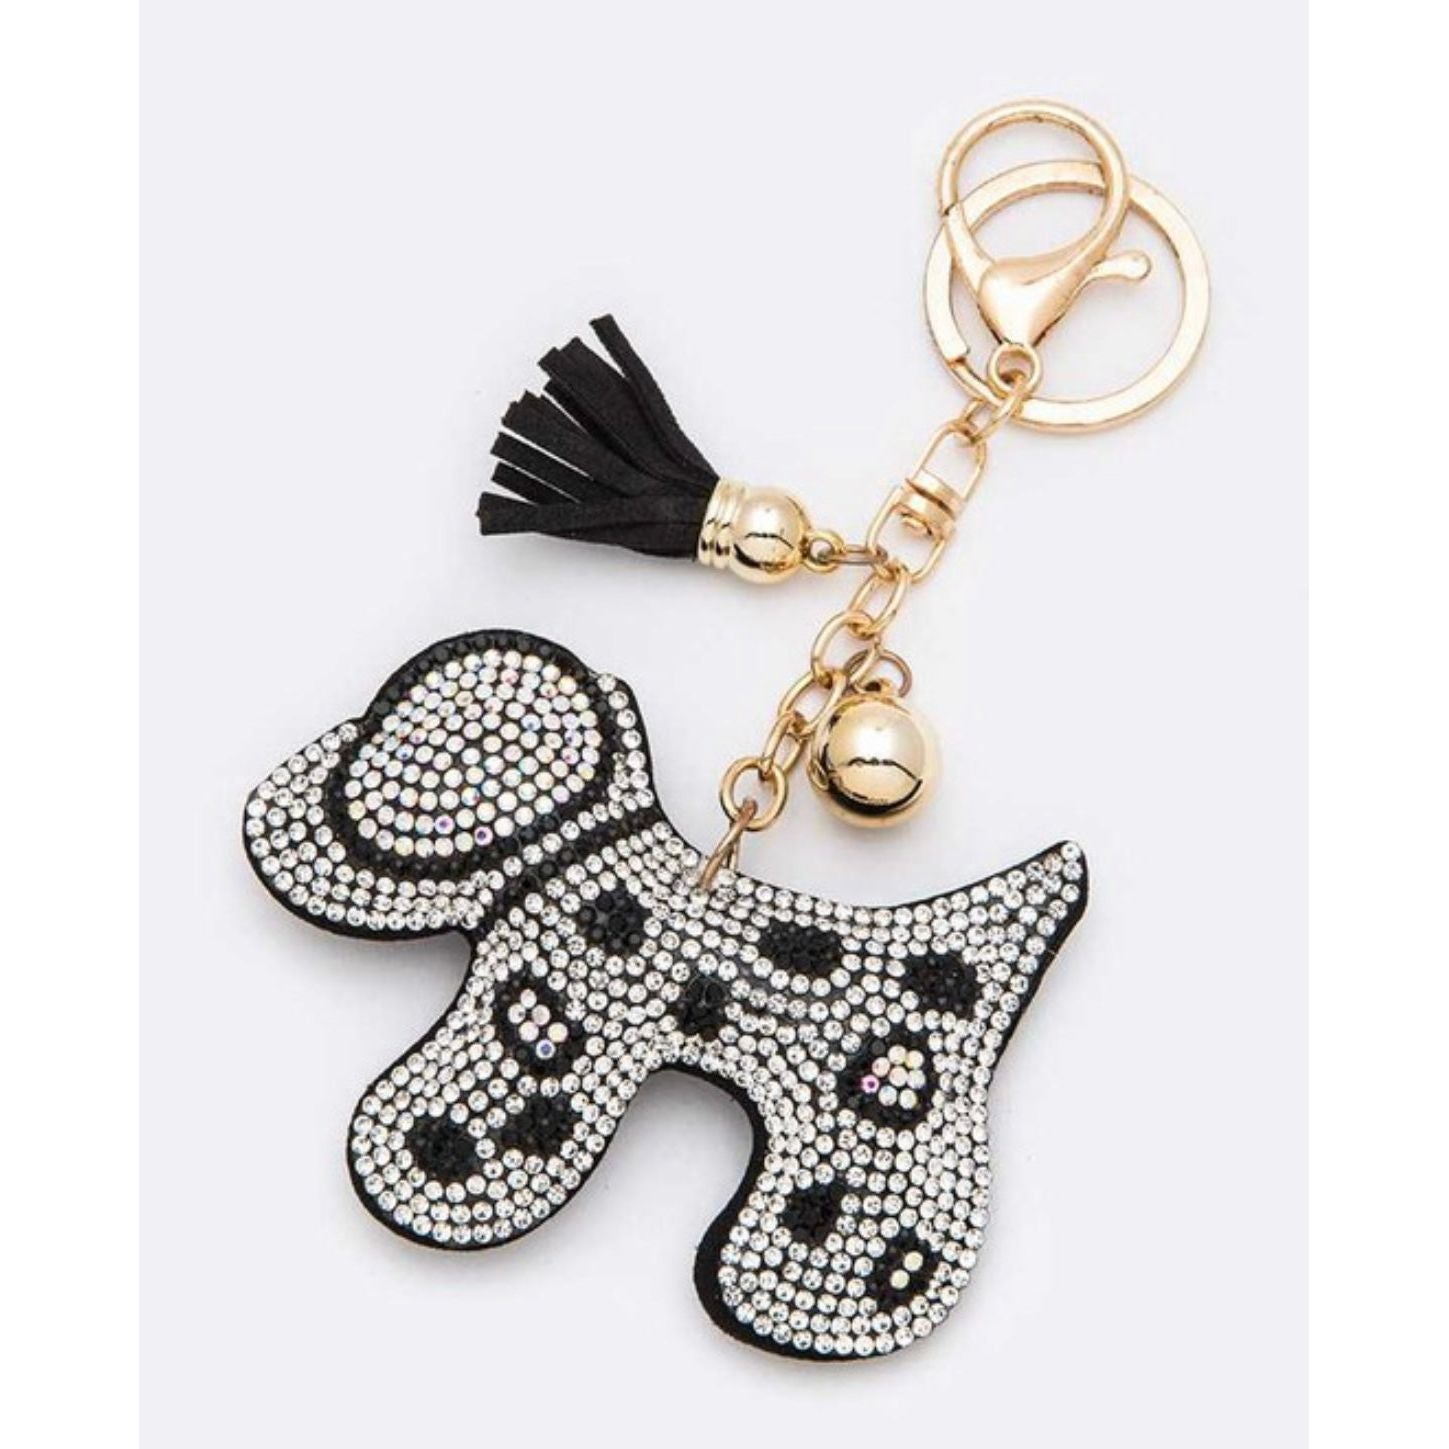 Crystal dog keychain with tassel 3"x2"